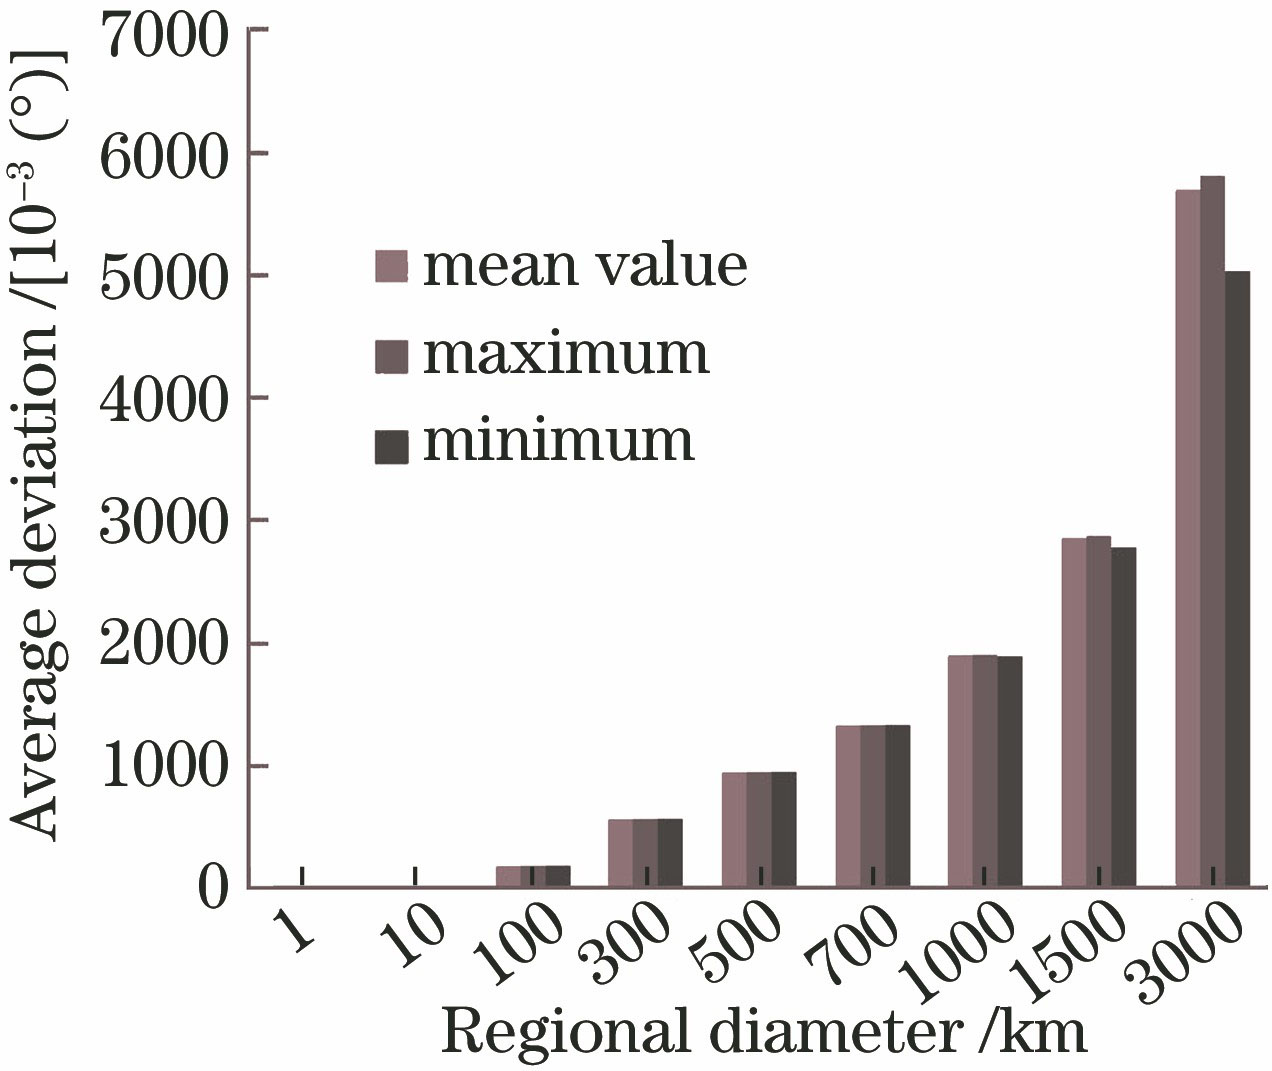 Mean value,maximum value, and minimum value of average deviation of regional solar elevation versus regional diameter